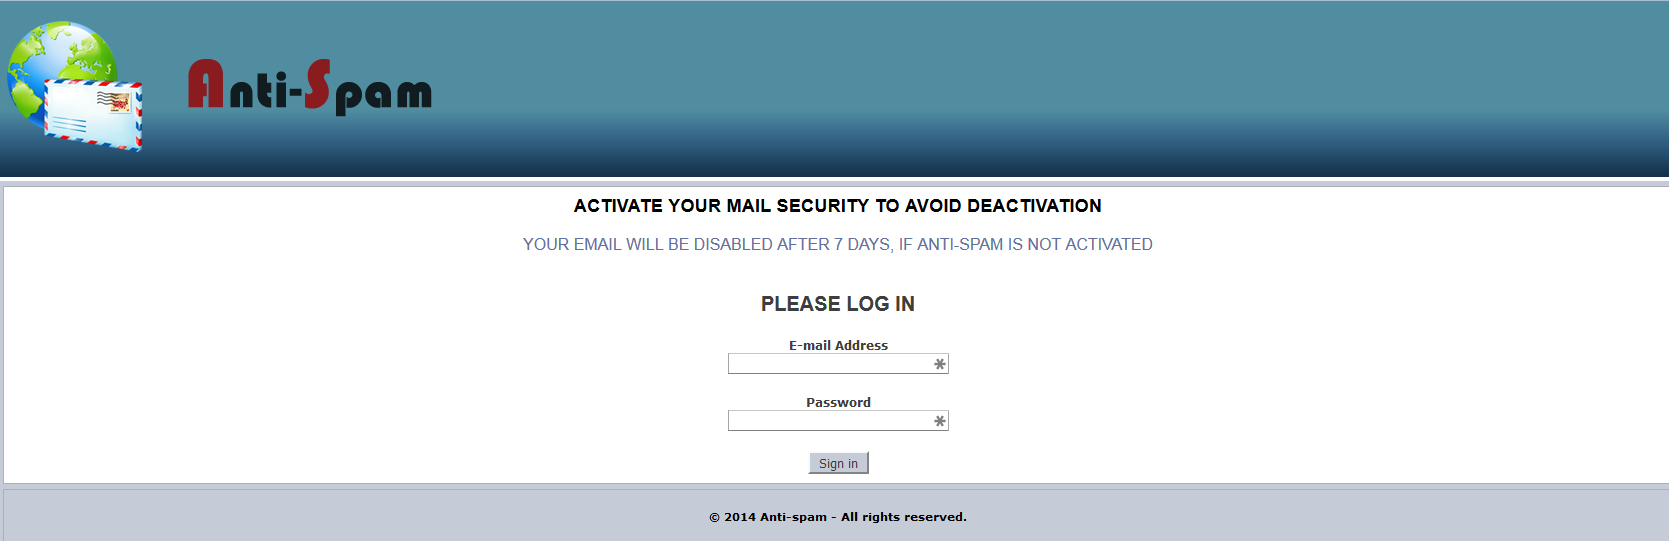 Anti Spam phishing page.